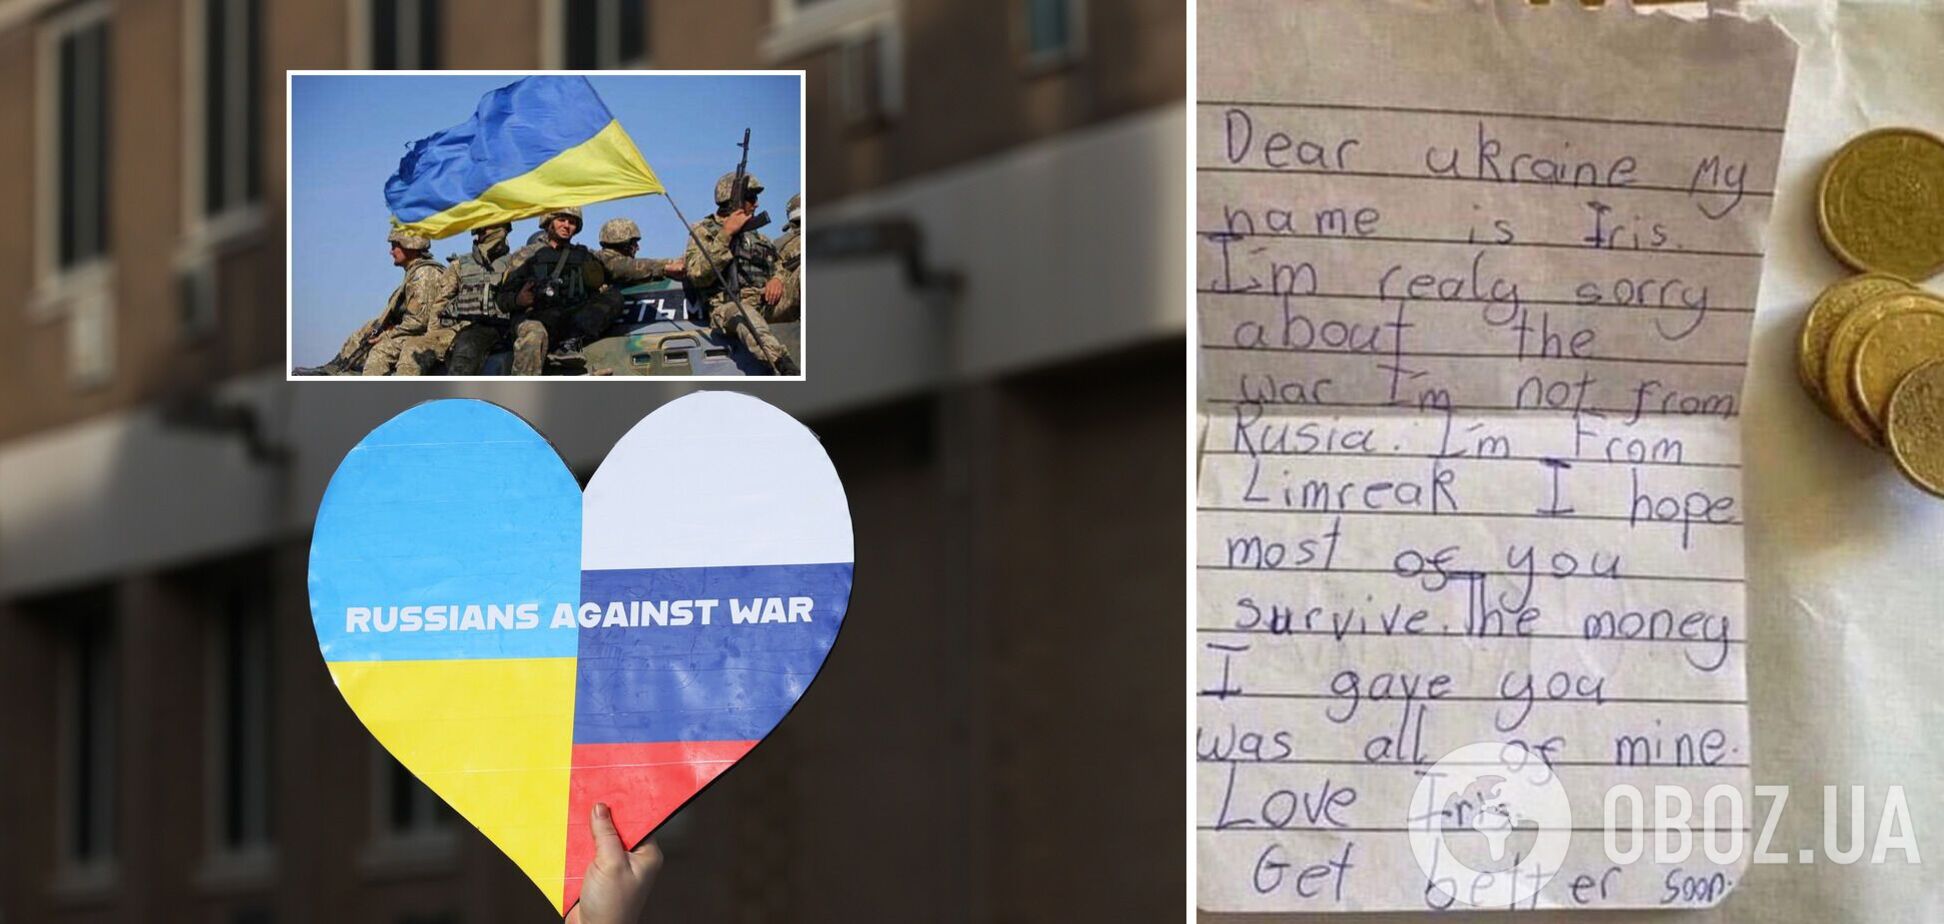 8-річна дівчинка з Ірландії зібрала всі свої гроші та попросила передати їх Україні. Фото